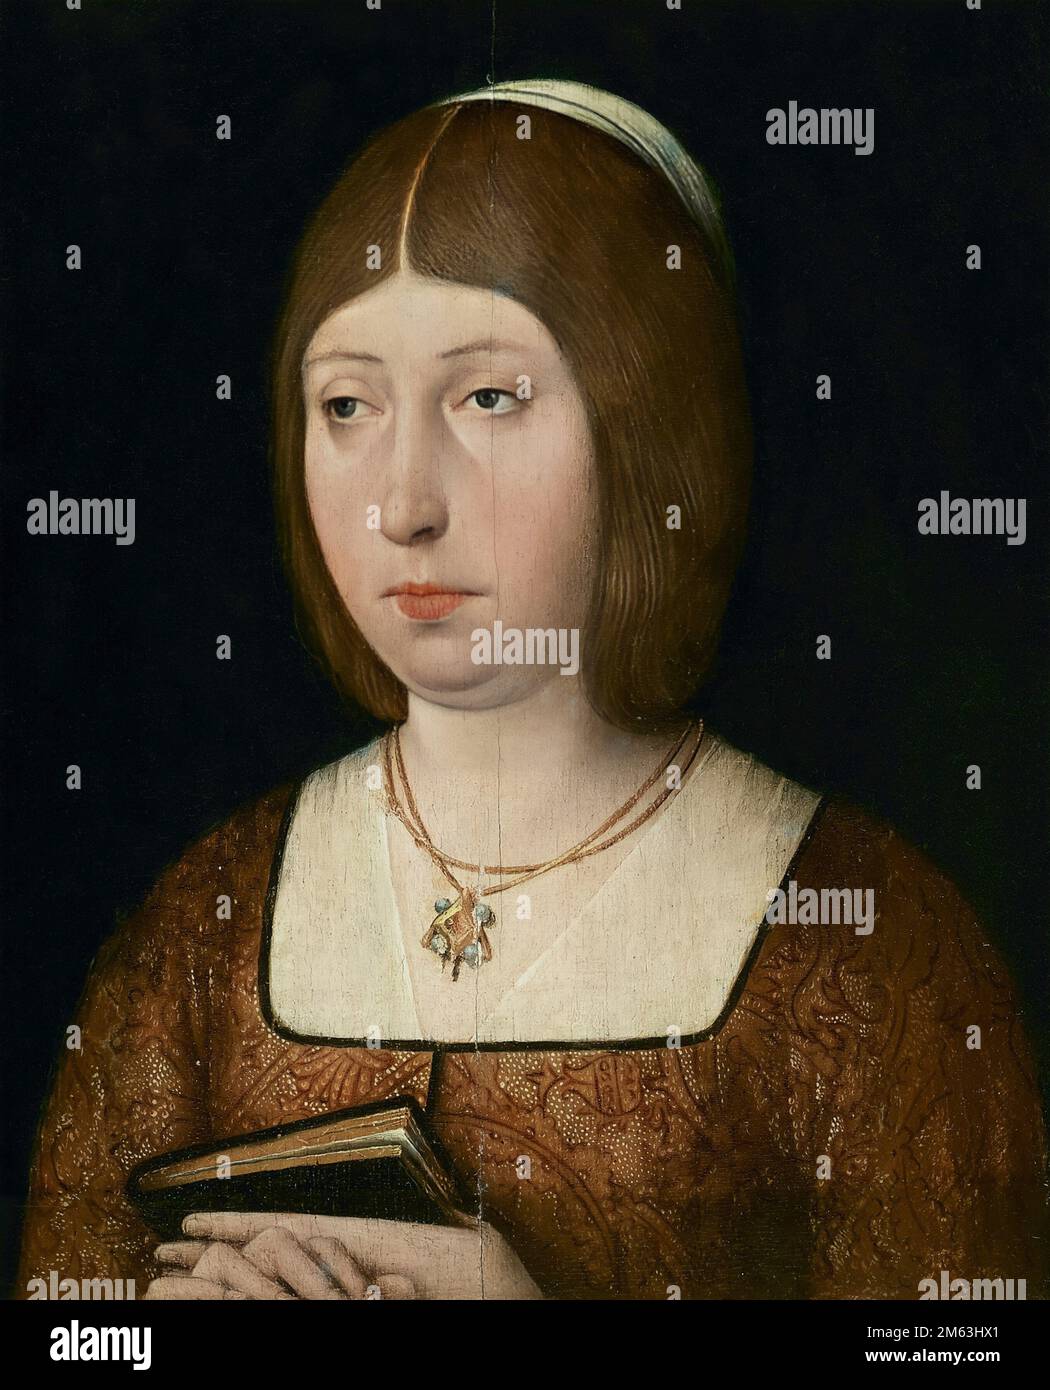 Anonymes Porträt der katholischen Königin Isabella (1451-1504), der Königin von Kastilien und León. Isabella, die Katholikin, war eine der wichtigsten Persönlichkeiten Stockfoto